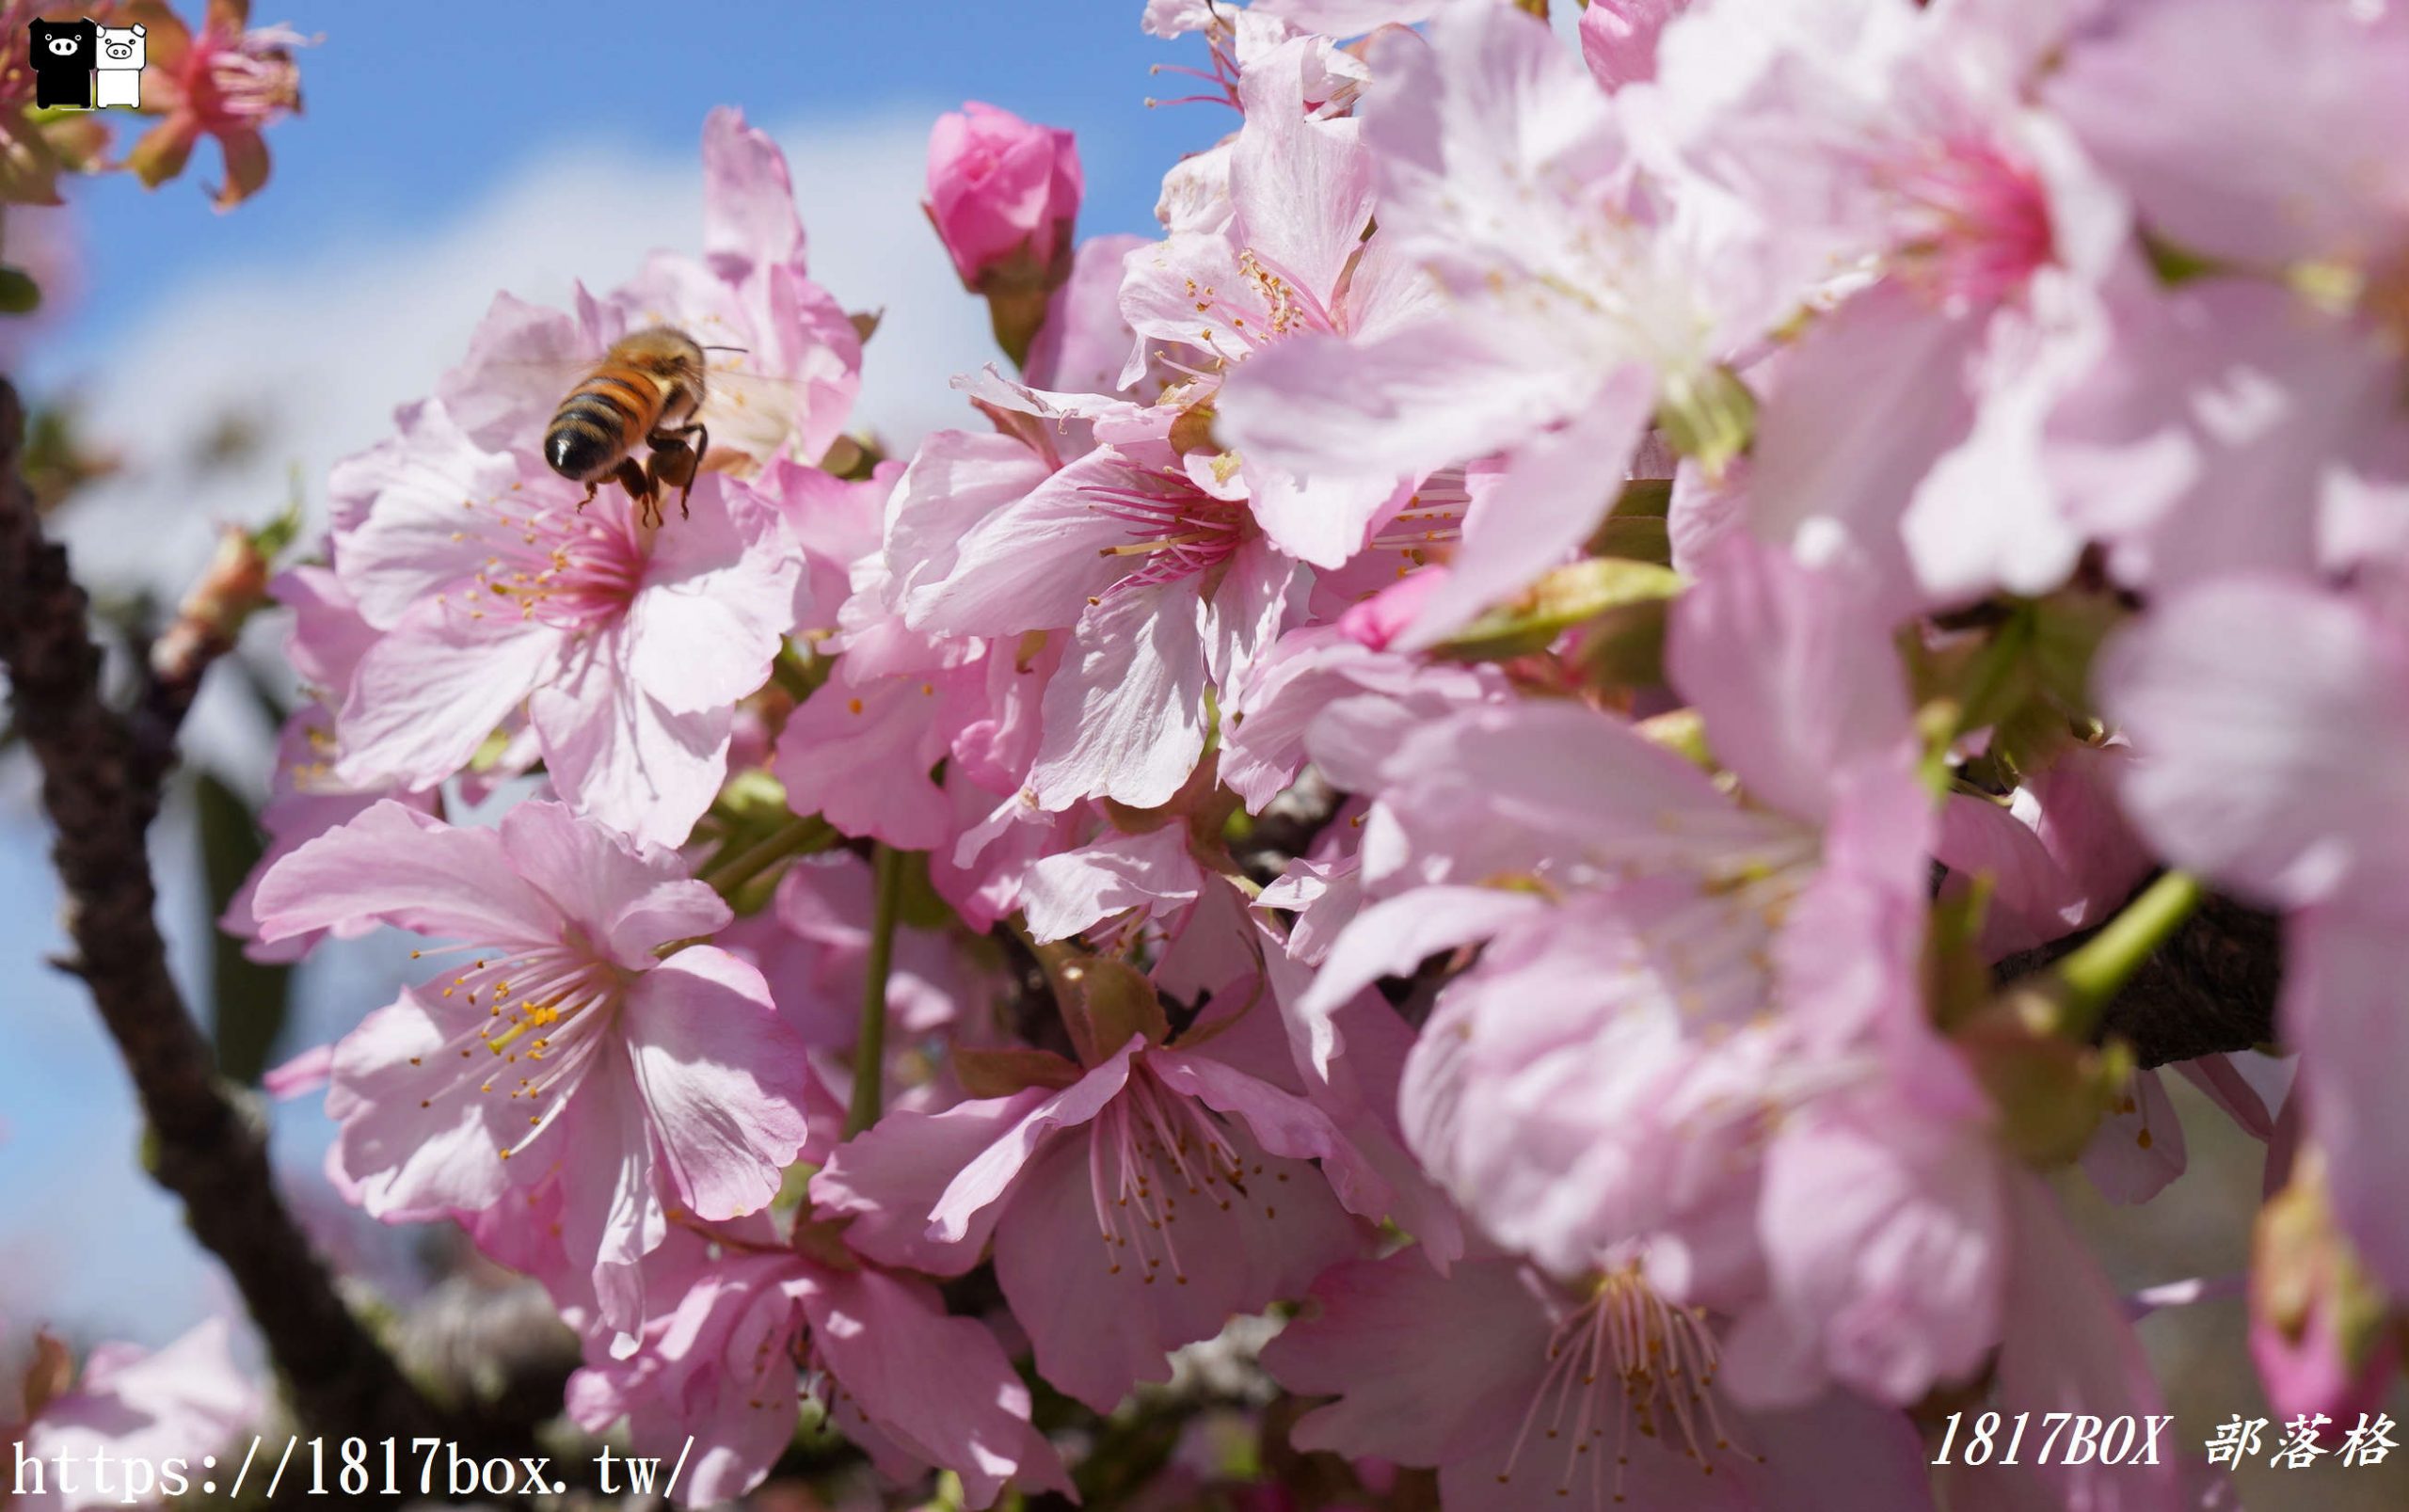 【台中。后里】中科崴立櫻花公園。粉色花海。櫻花盛開